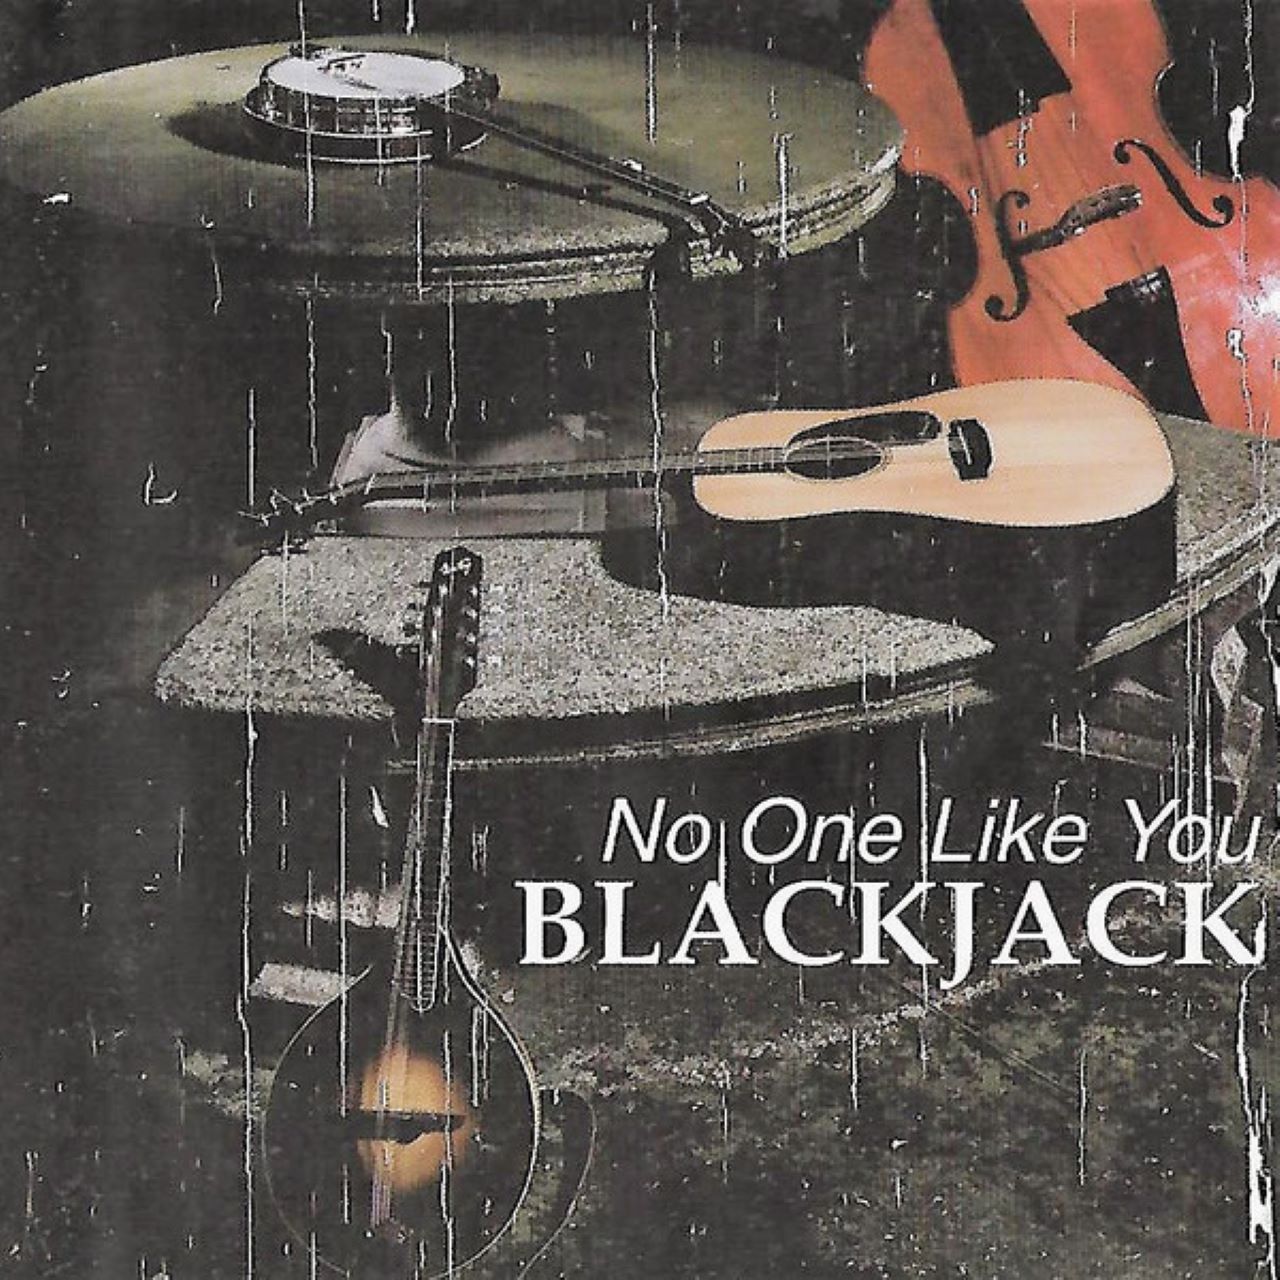 Blackjack - No One Like You cover album